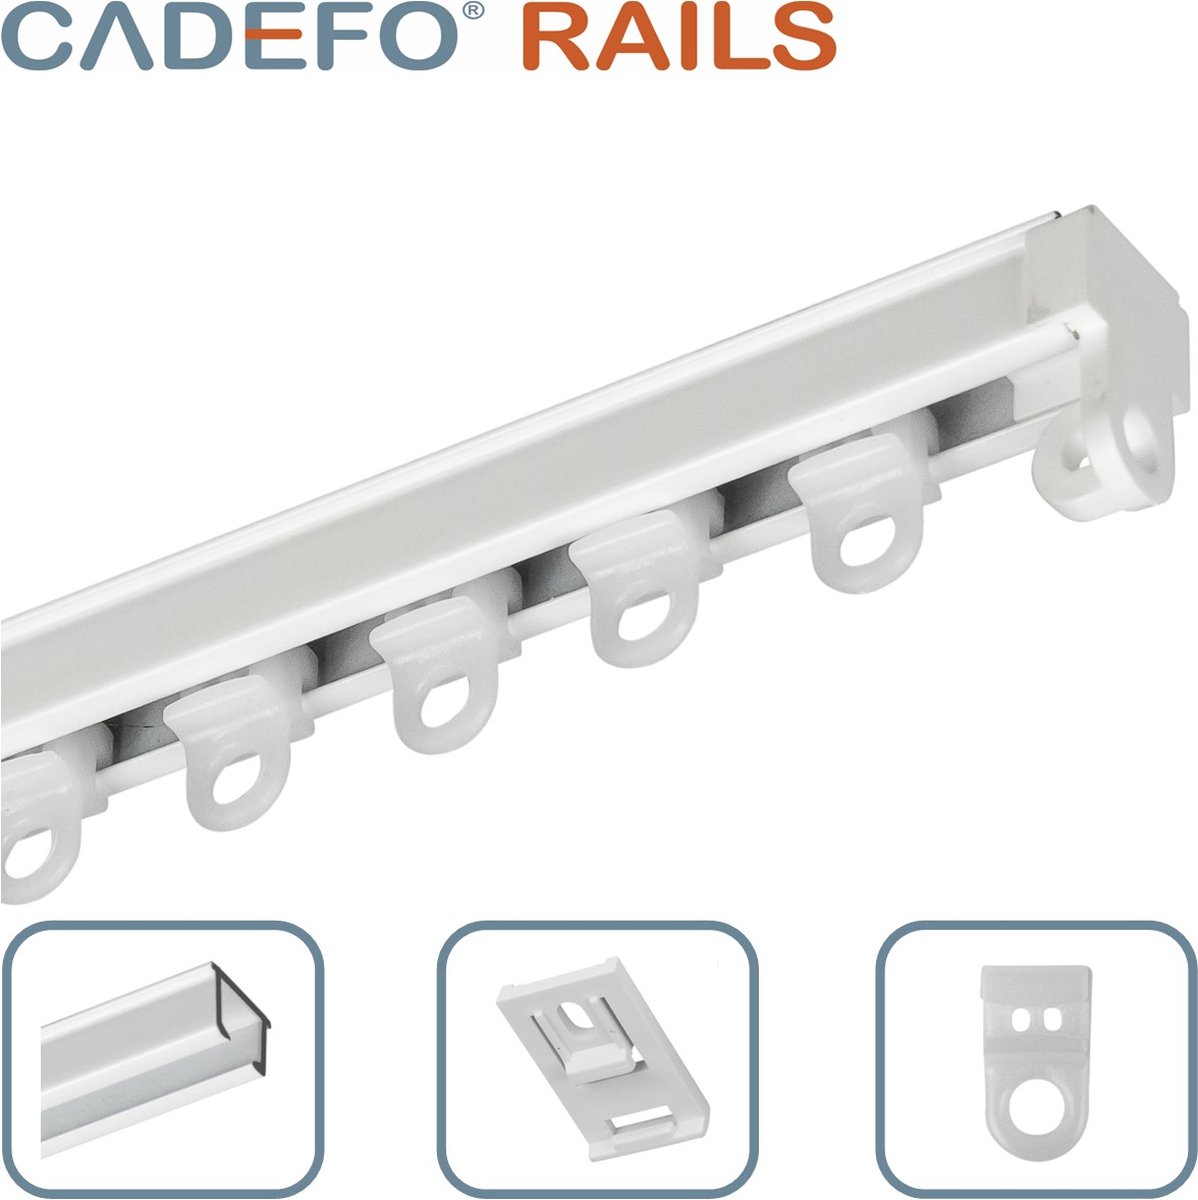 CADEFO RAILS (351 - 400 cm) Gordijnrails - Compleet op maat! - UIT 1 STUK - Leverbaar tot 6 meter - Plafondbevestiging - Lengte 391 cm